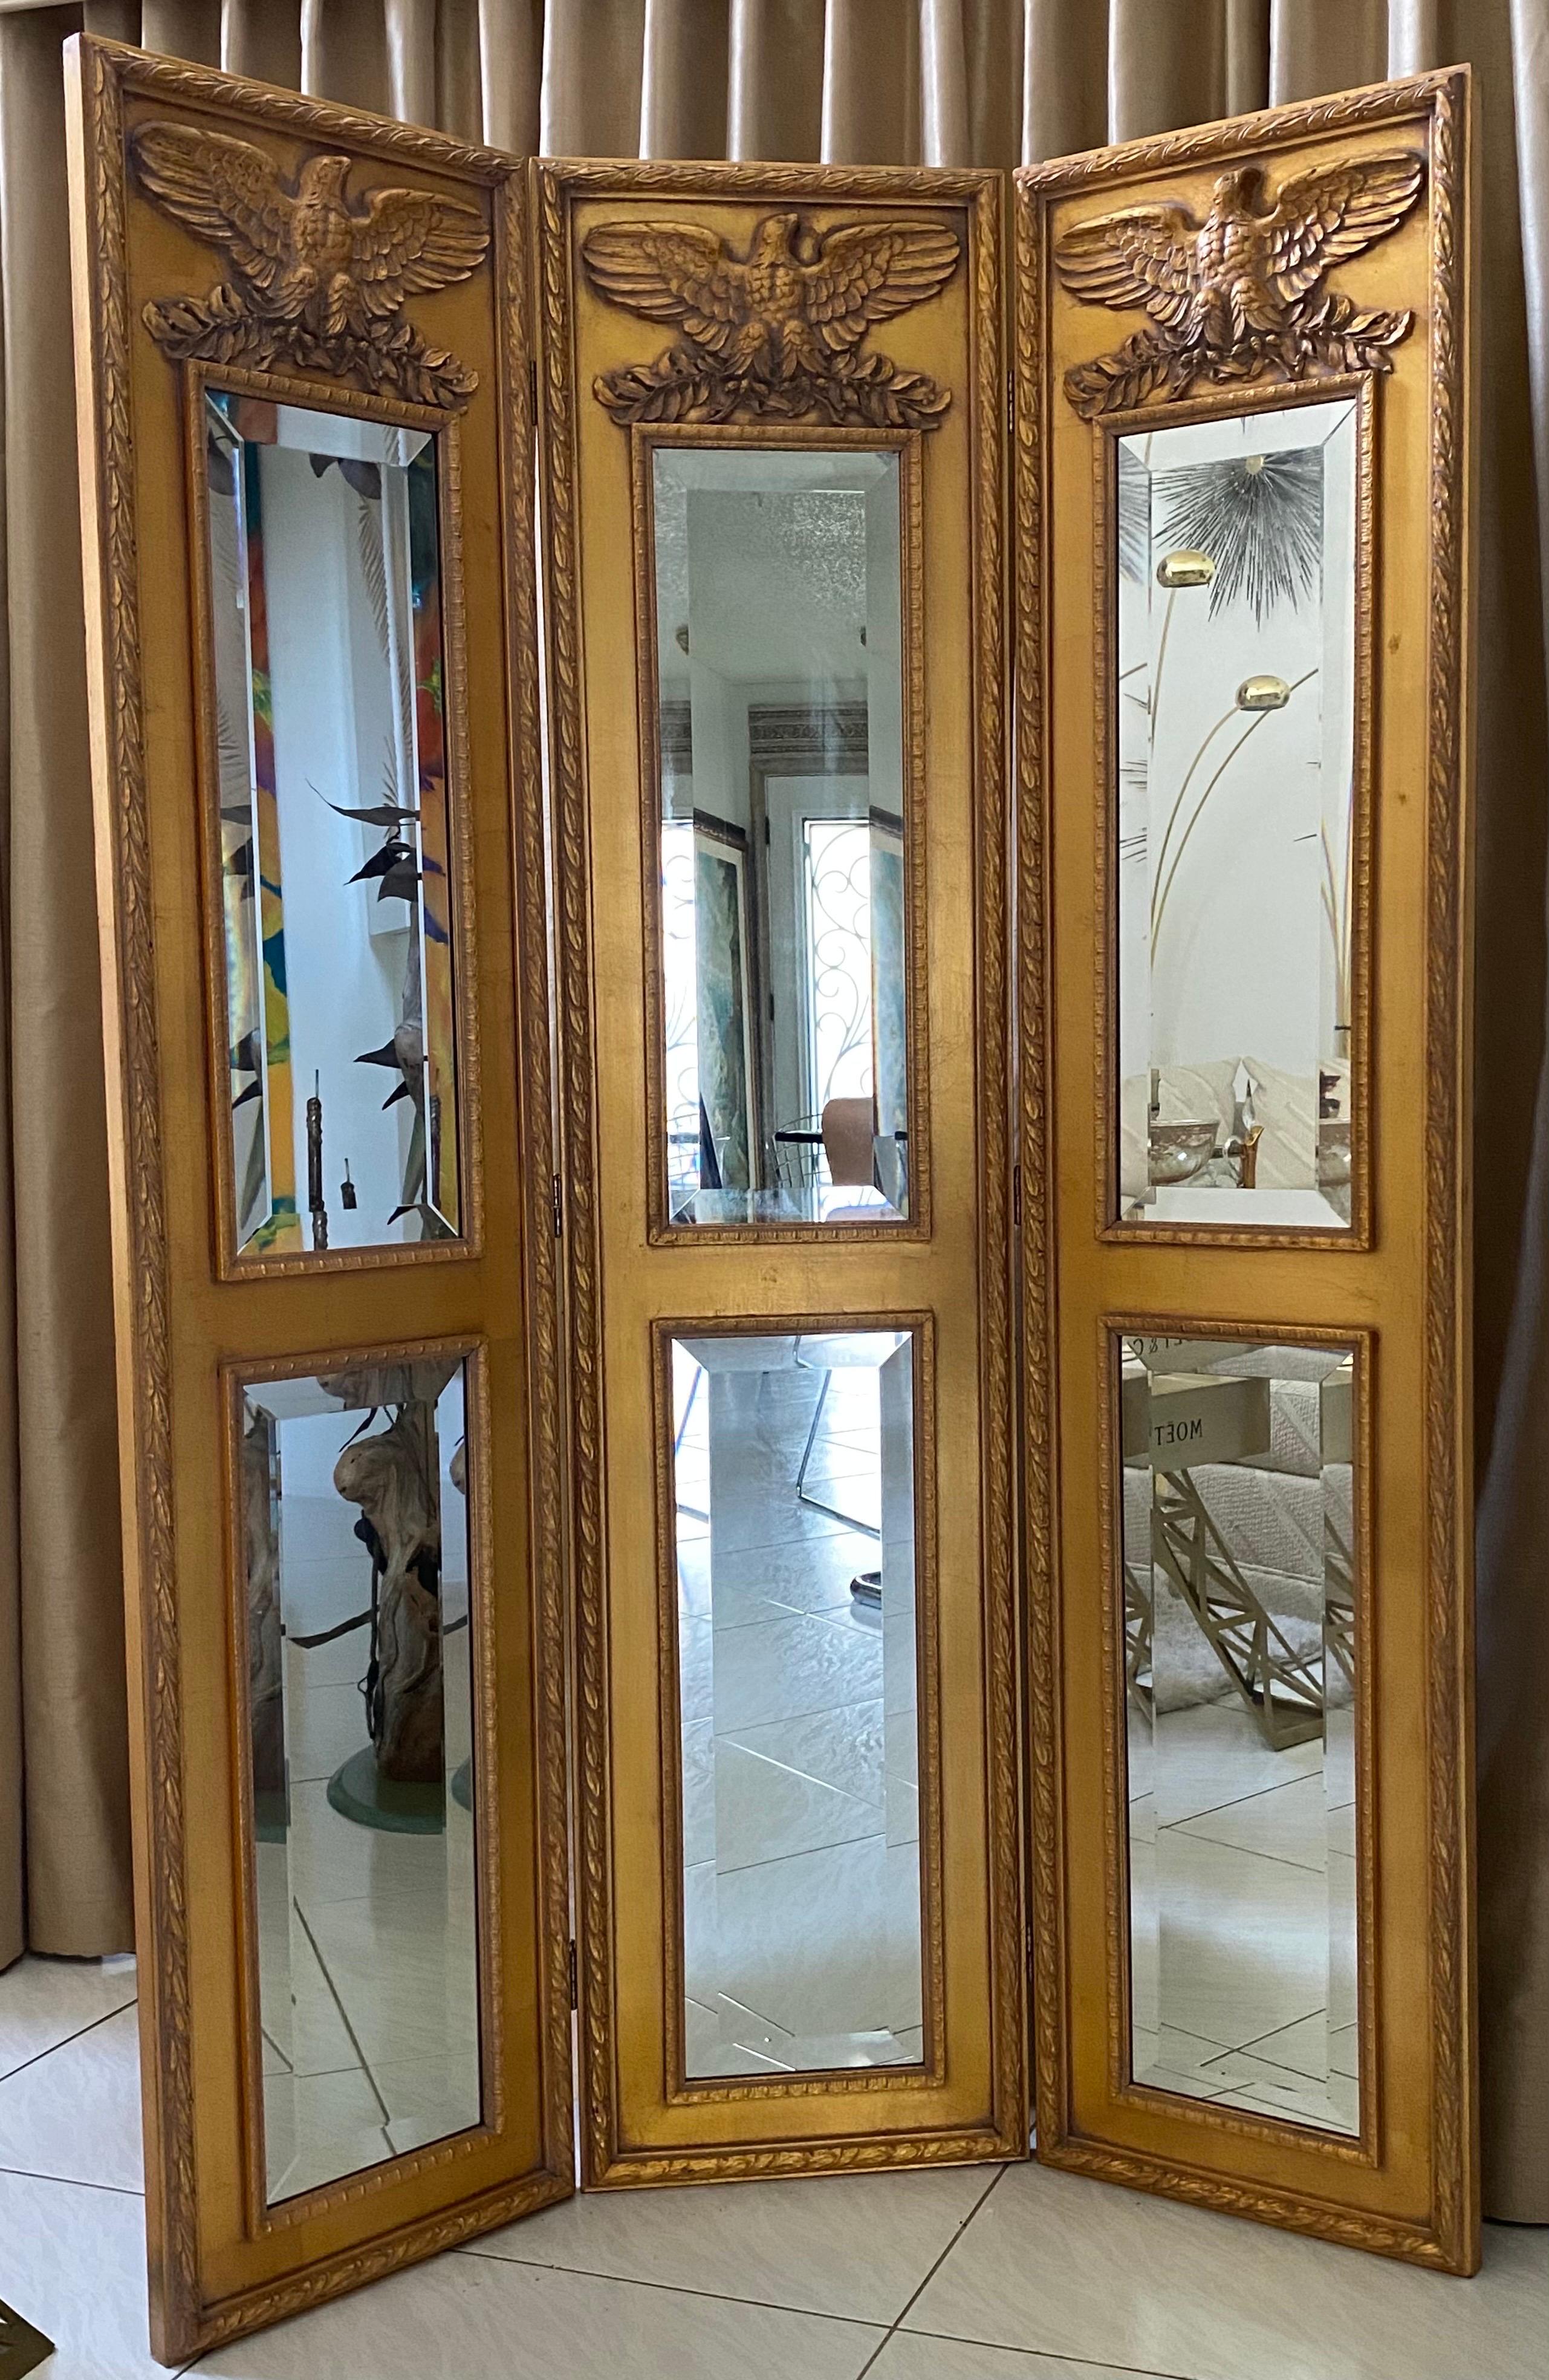 3 panel mirror room divider